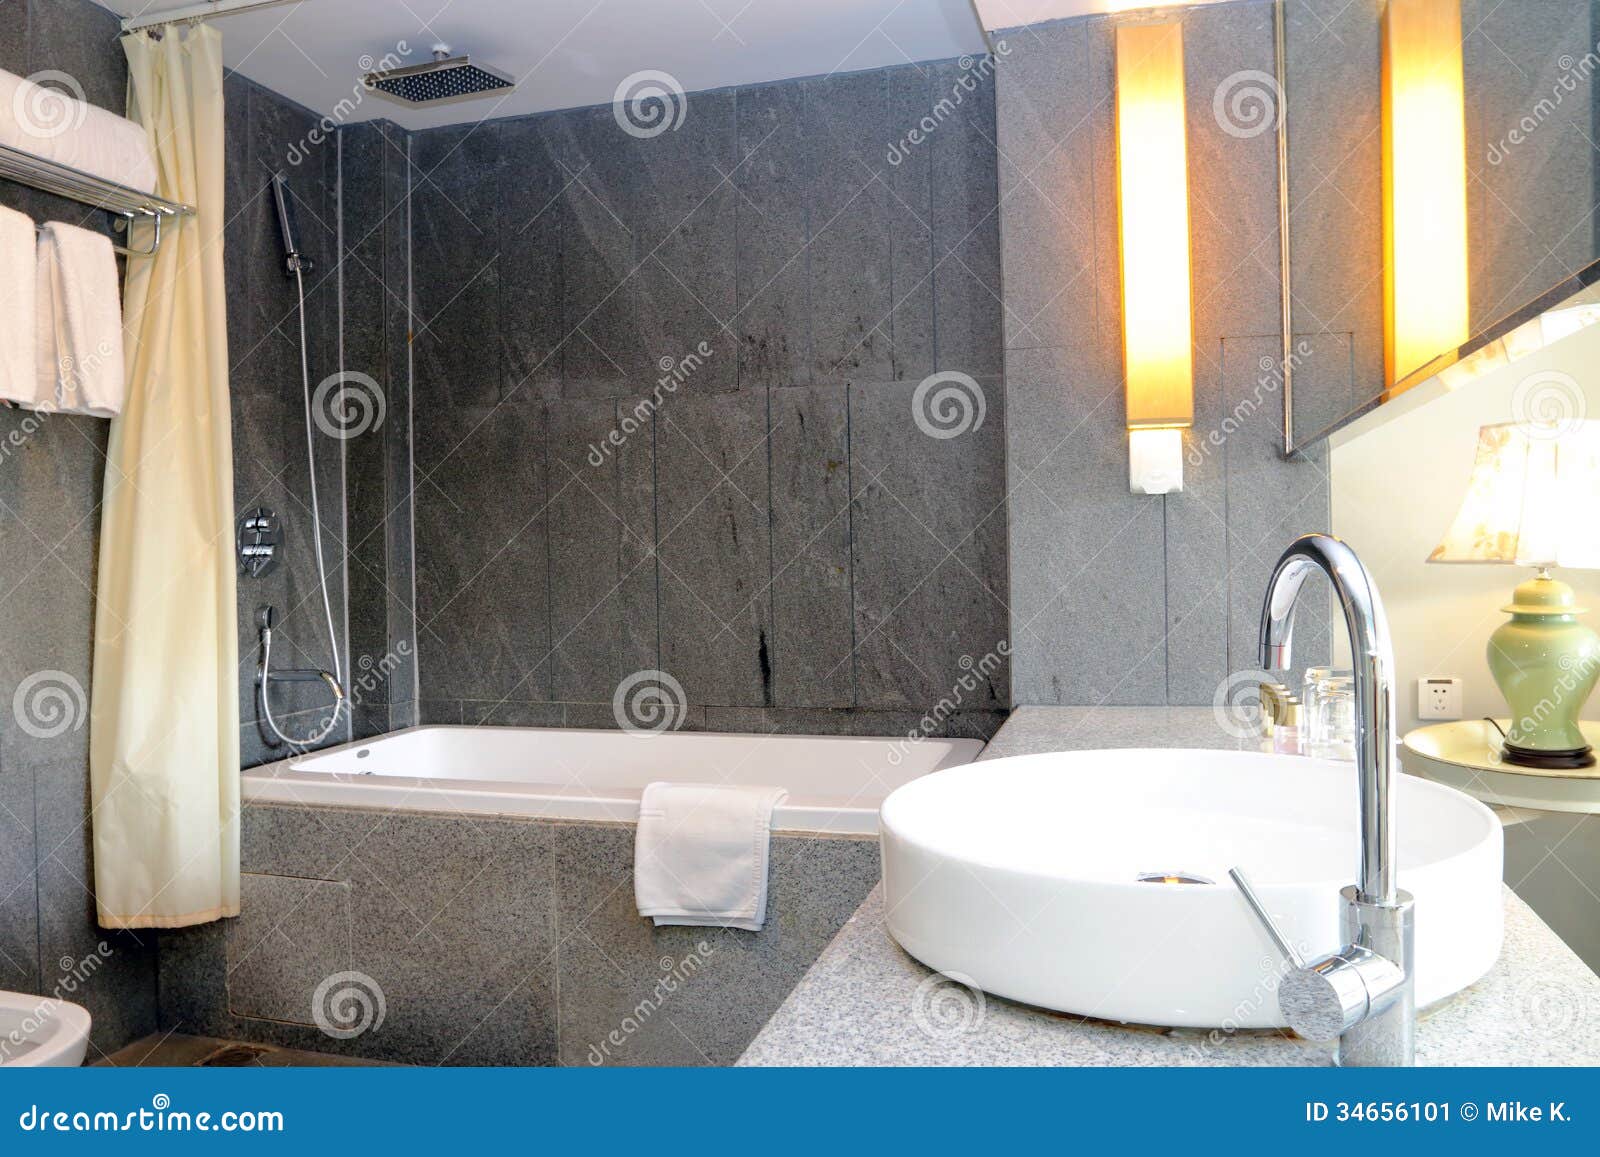 Badezimmer stockbild. Bild von innen, zeitgenössisch - 34656101